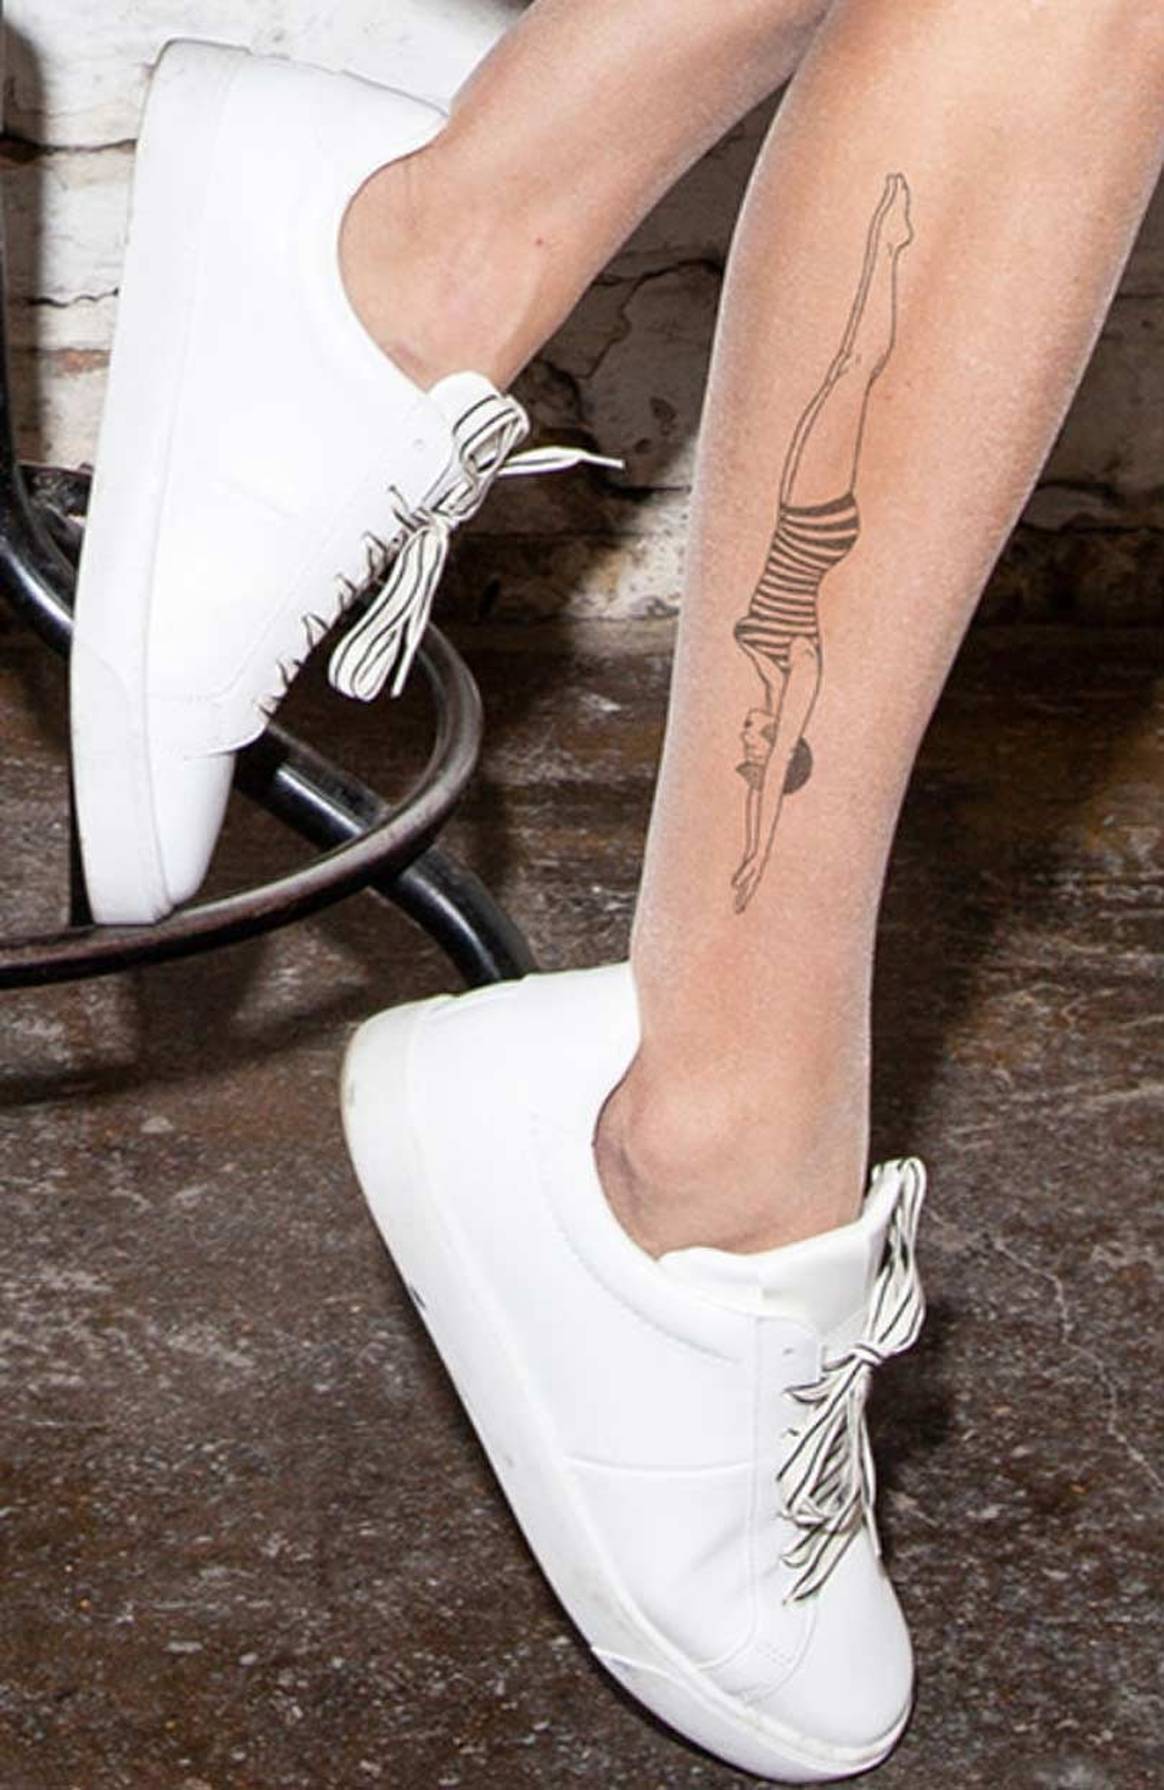 In Bildern: Wolfords neue Strumpfhosen mit exklusiven Tattoos